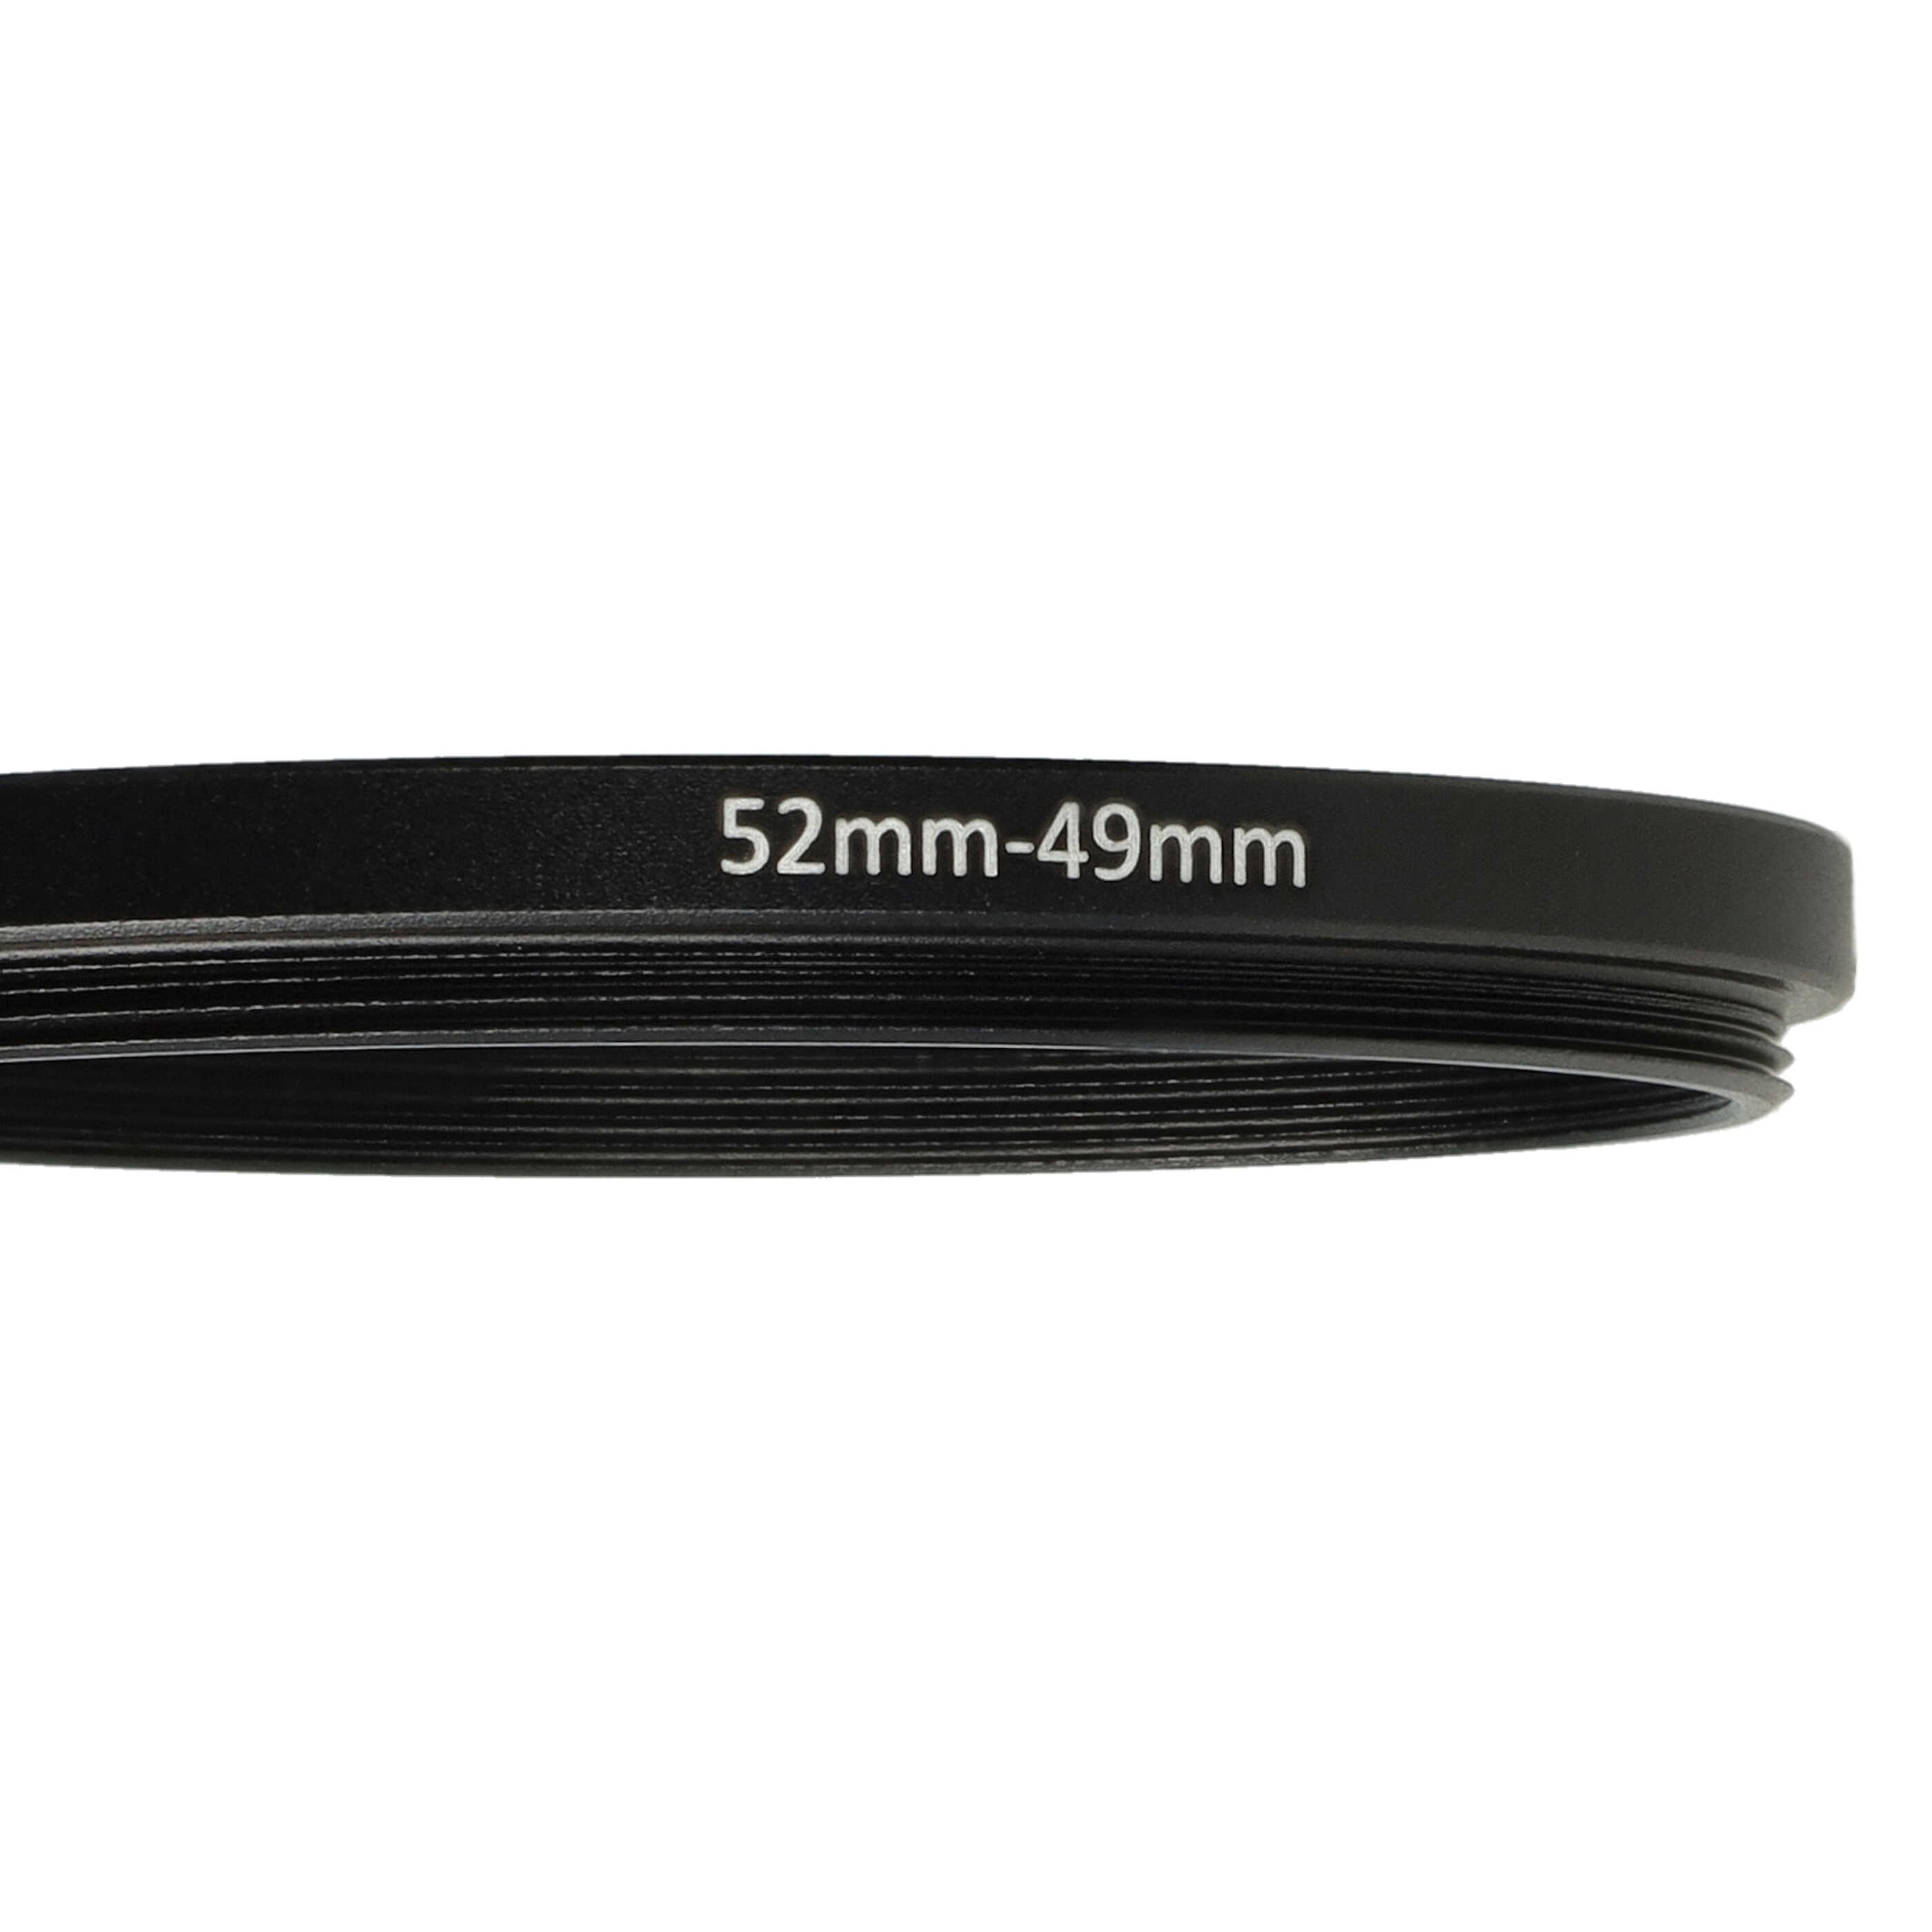 Redukcja filtrowa adapter Step-Down 52 mm - 49 mm pasująca do obiektywu - metal, czarny